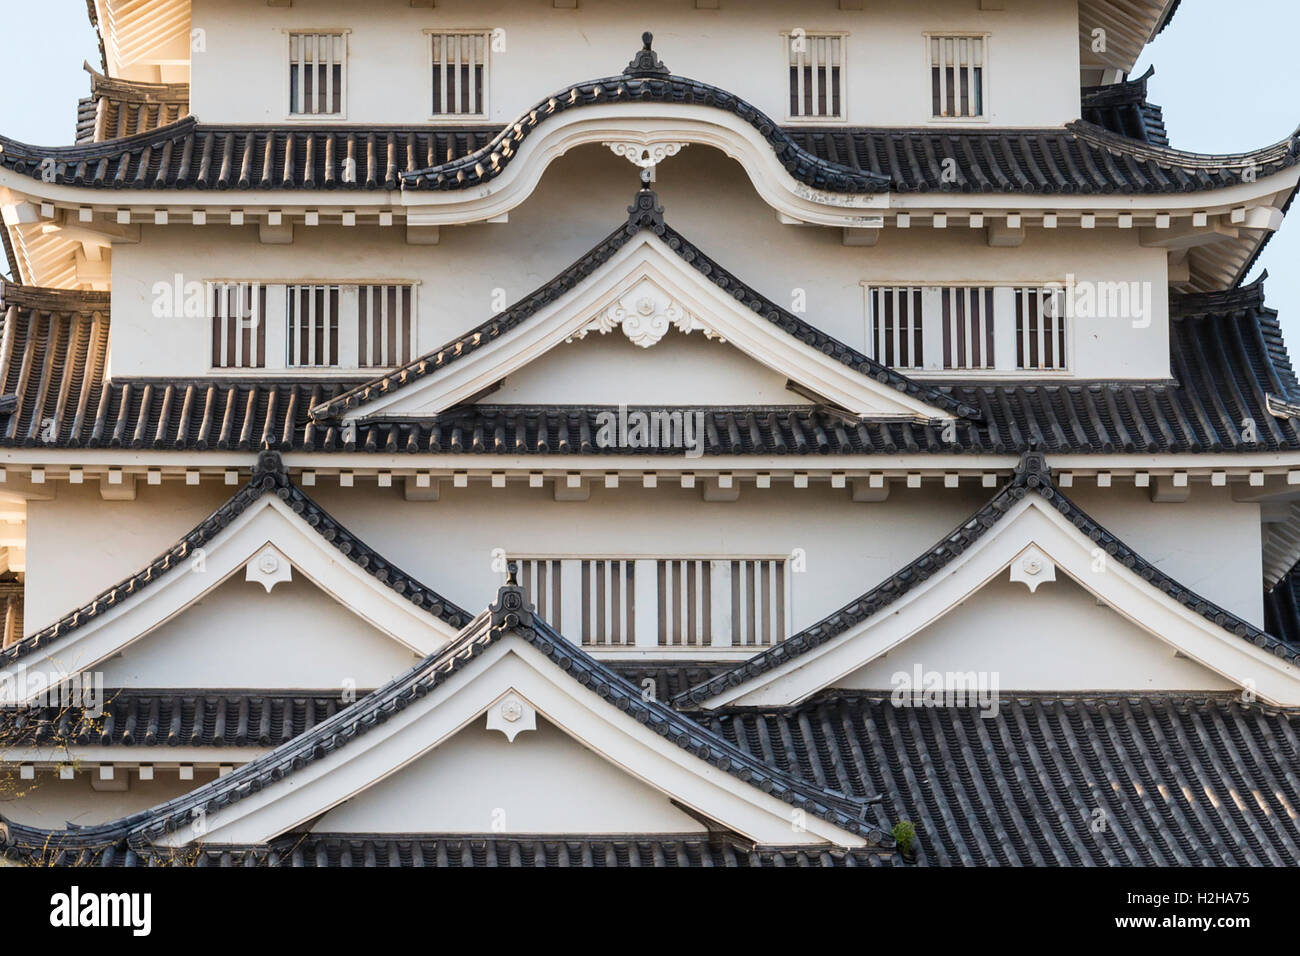 Giappone, Fukuyama castello. Close up tenshu, mantenere, mostrando il gables; piano più alto, Karahafu stile, con stile Chidorihafu qui di seguito. Foto Stock